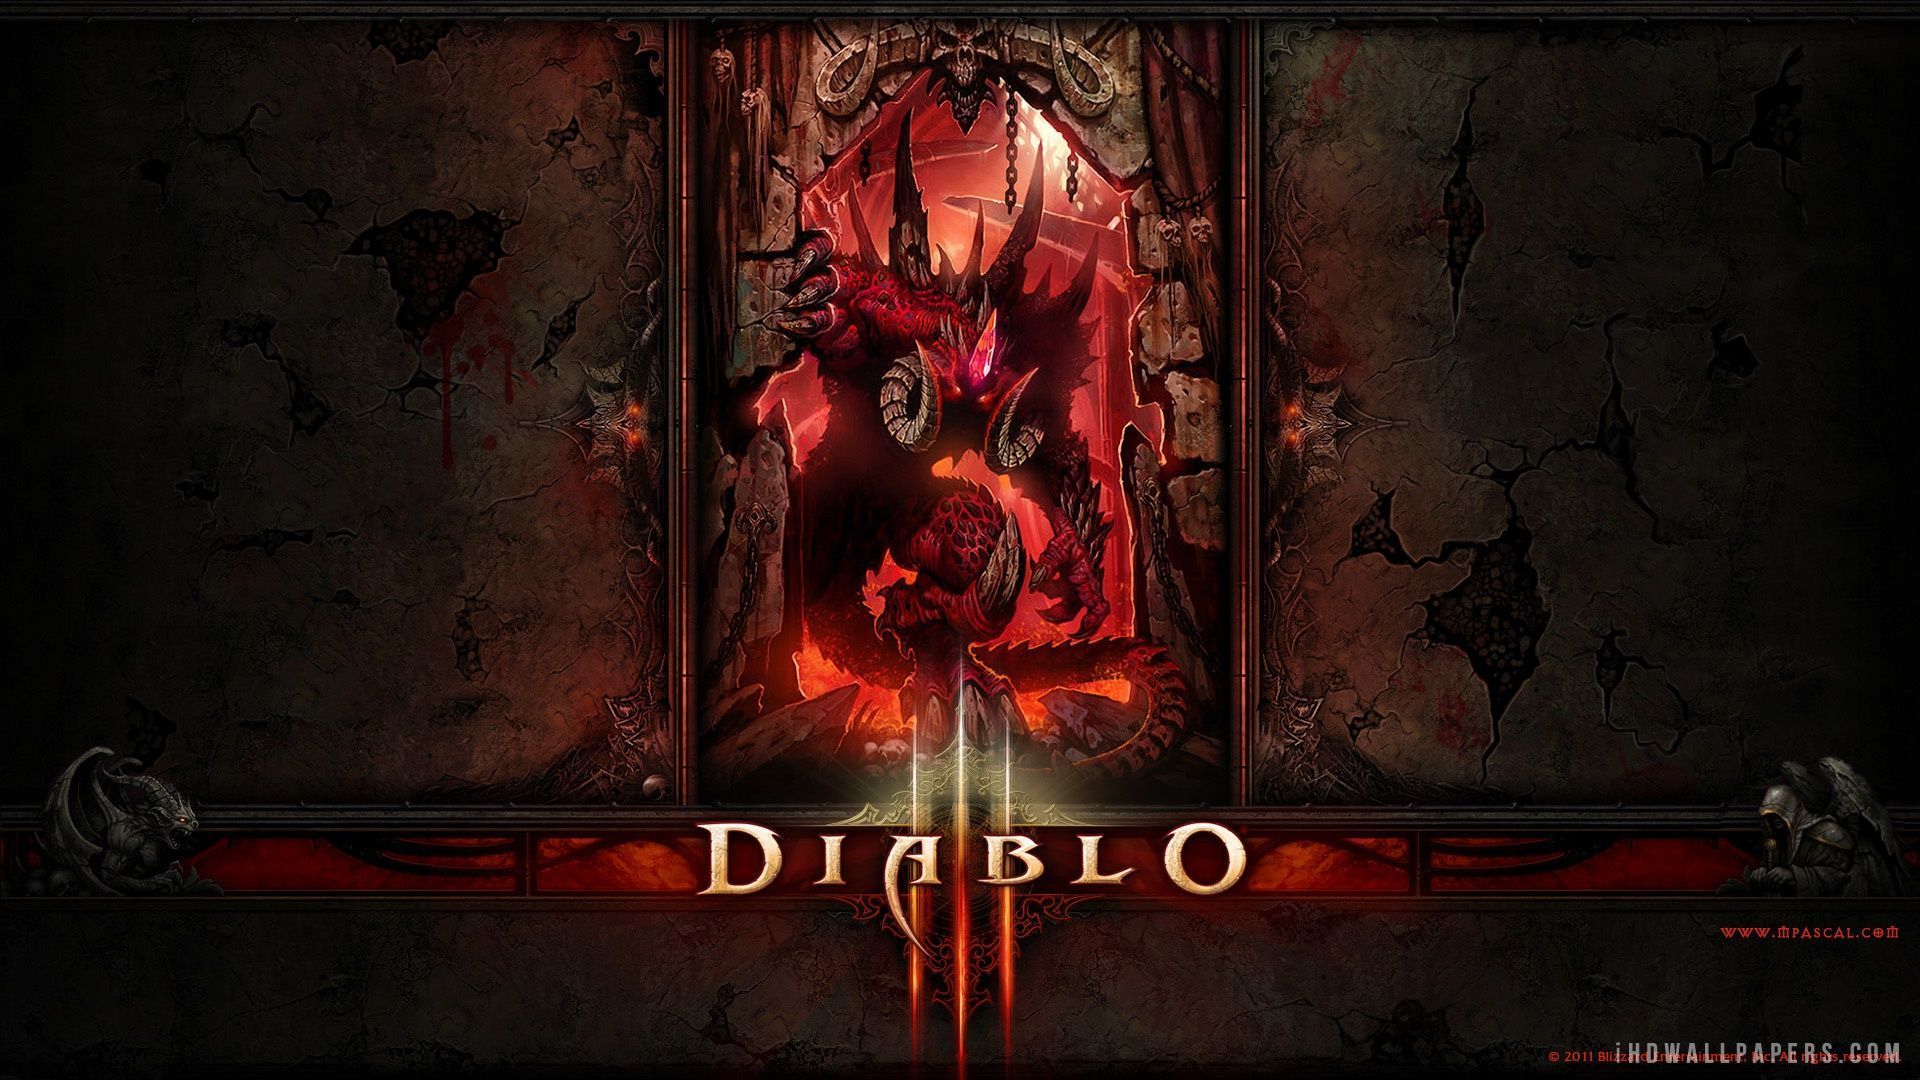 Diablo 3 HD Wide Wallpaper - 1920x1080 Resolution